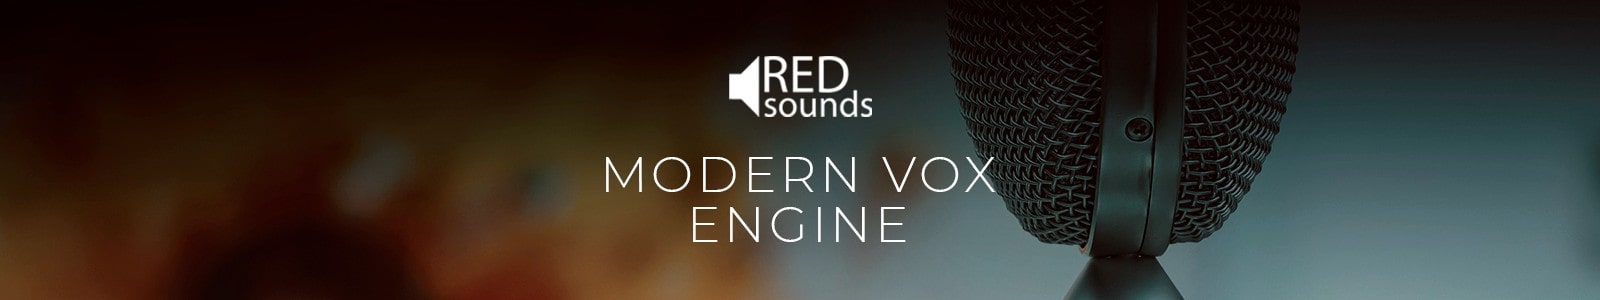 modern vox engine